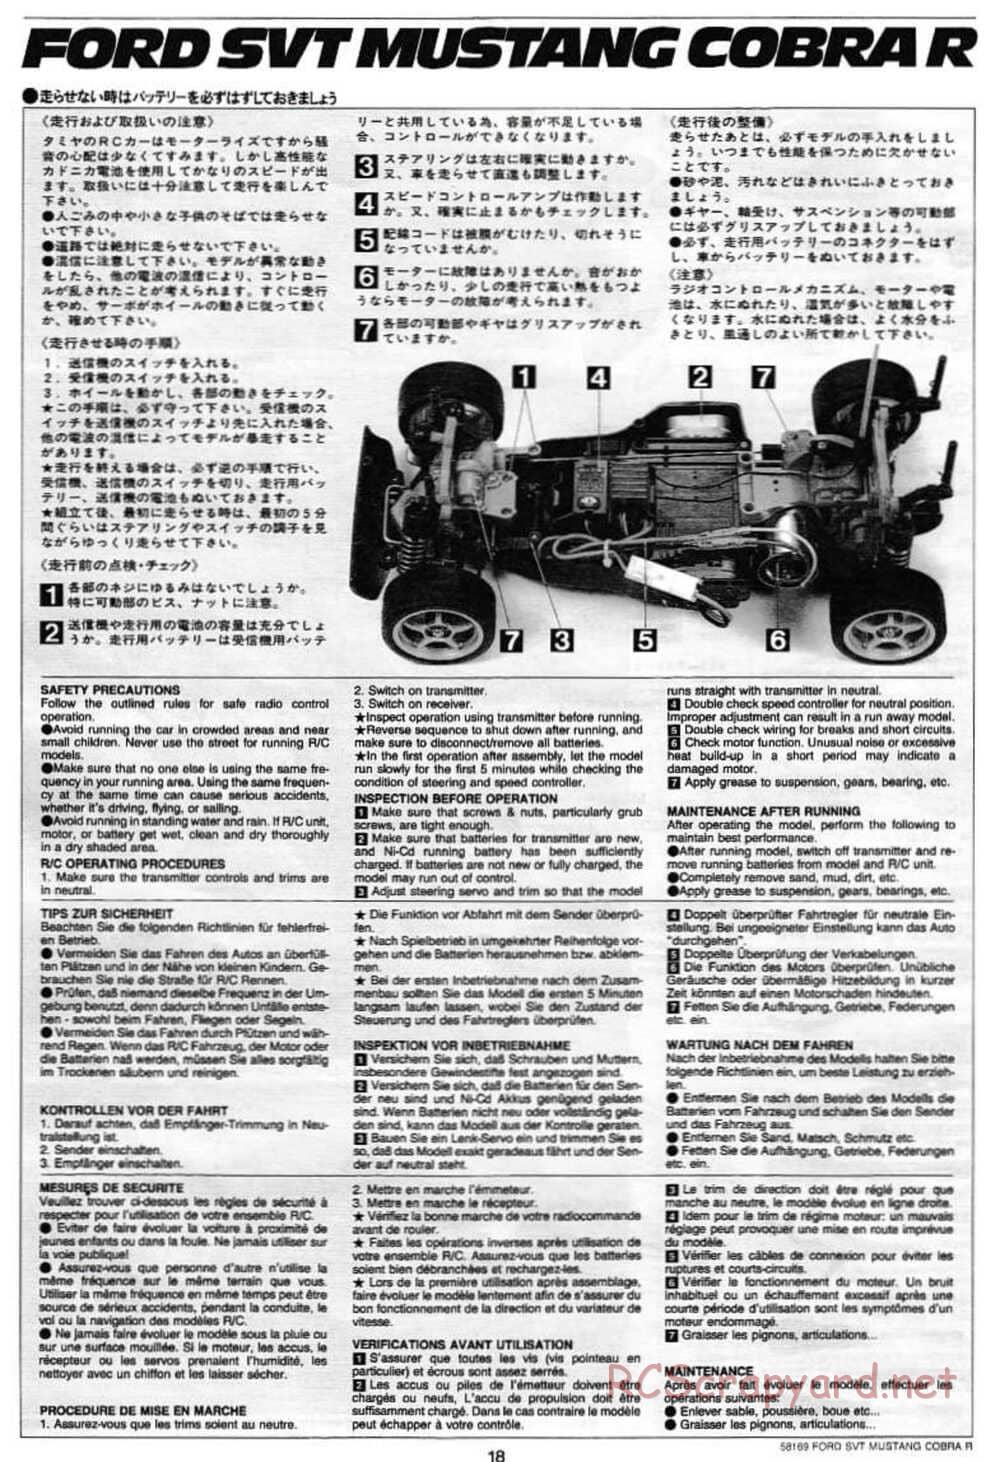 Tamiya - Ford SVT Mustang Cobra-R - TA-02 Chassis - Manual - Page 20